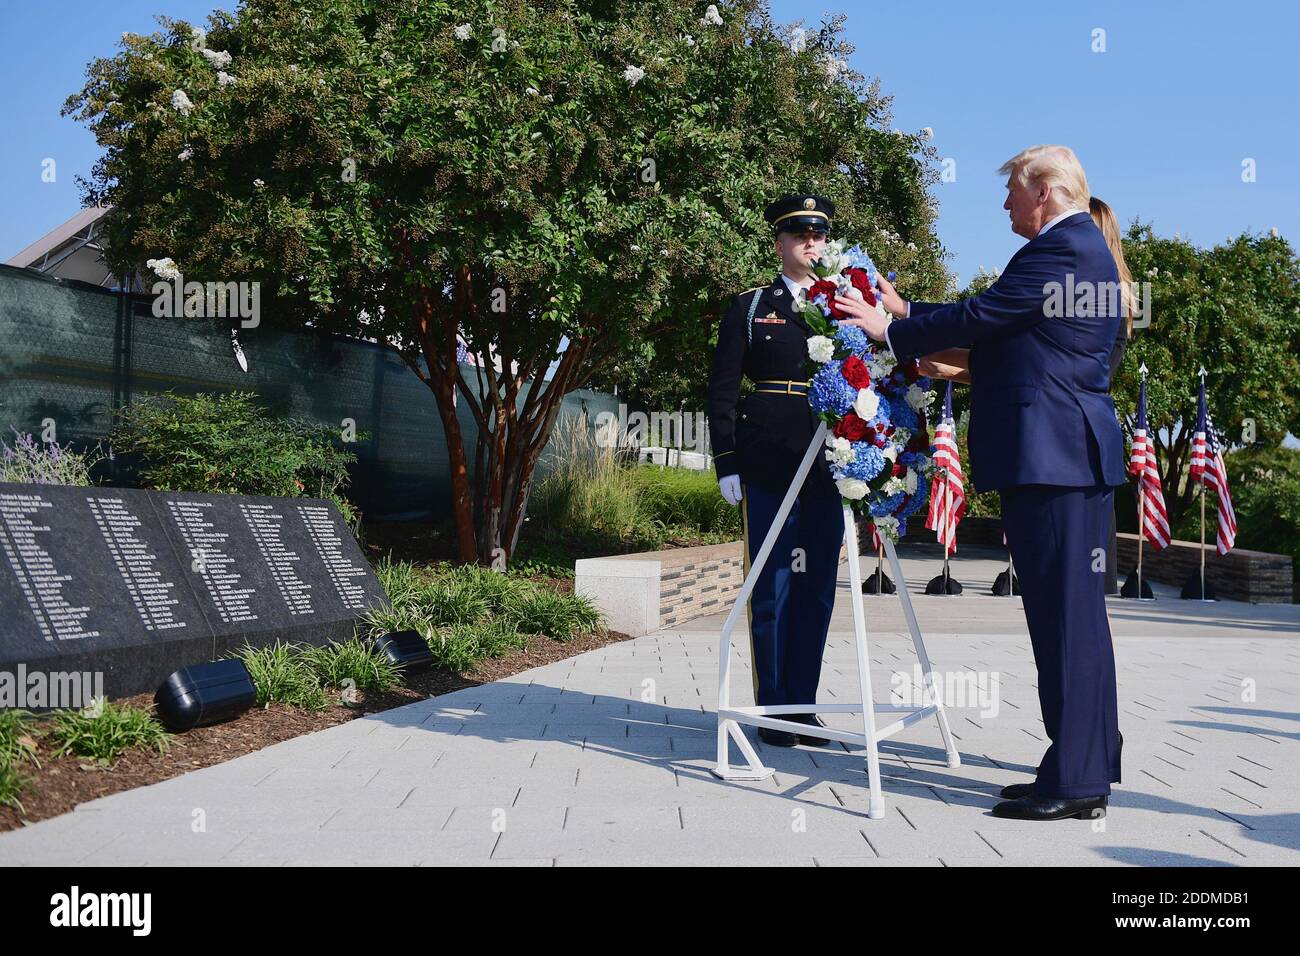 Il presidente Donald Trump depone una corona al Pentagono durante il diciottesimo anniversario della commemorazione degli attacchi terroristici del 11 settembre, ad Arlington, Virginia, mercoledì 11 settembre 2019. Foto di Kevin Dietsch/piscina/ABACAPRESS.COM Foto Stock